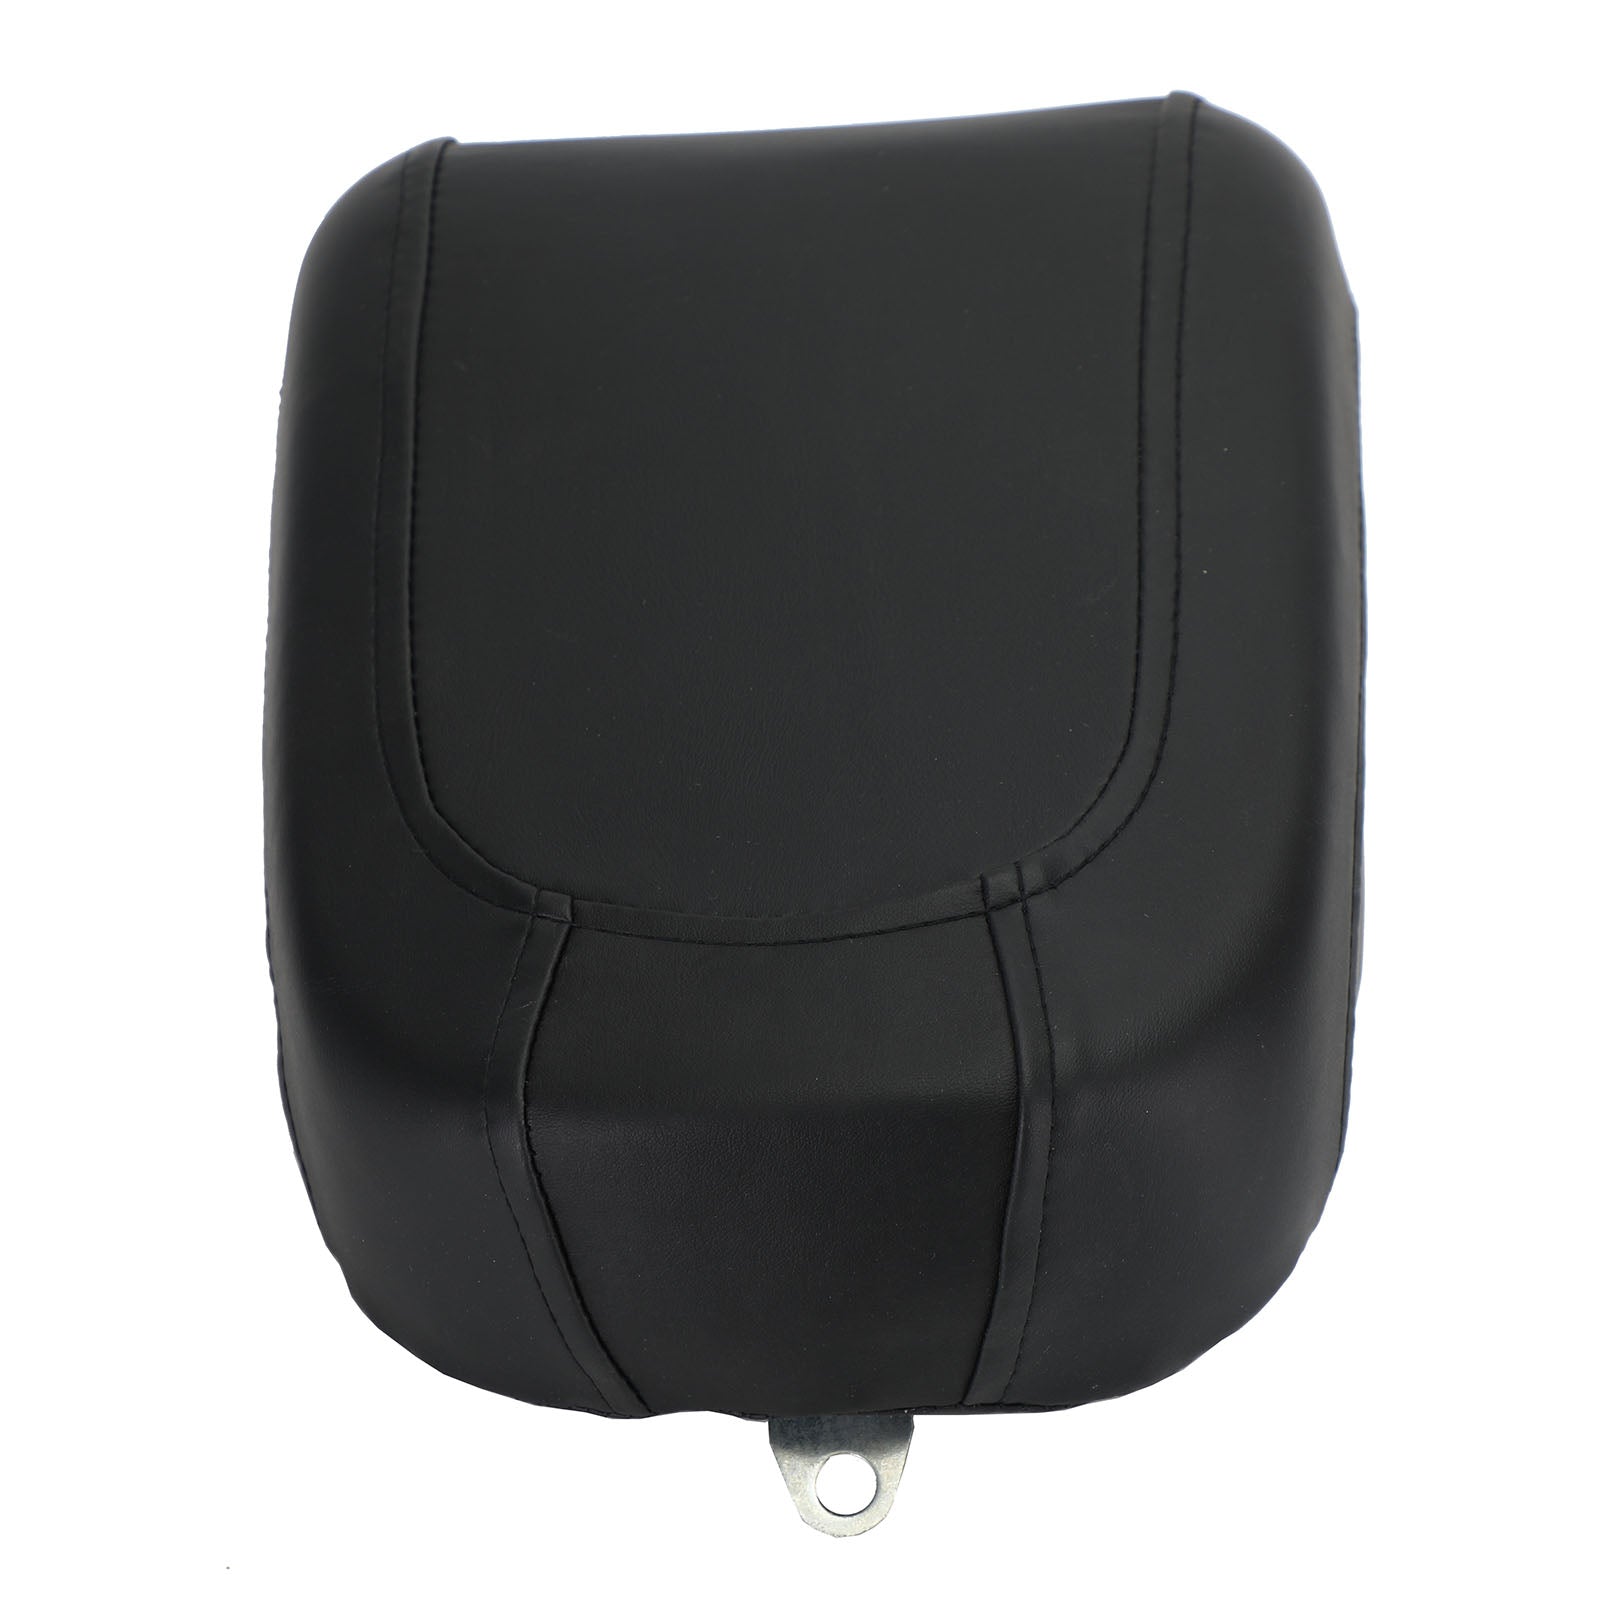 Cuscino nero per sedile passeggero posteriore adatto per Harley Flstsb Cross Bones 08-11 generico